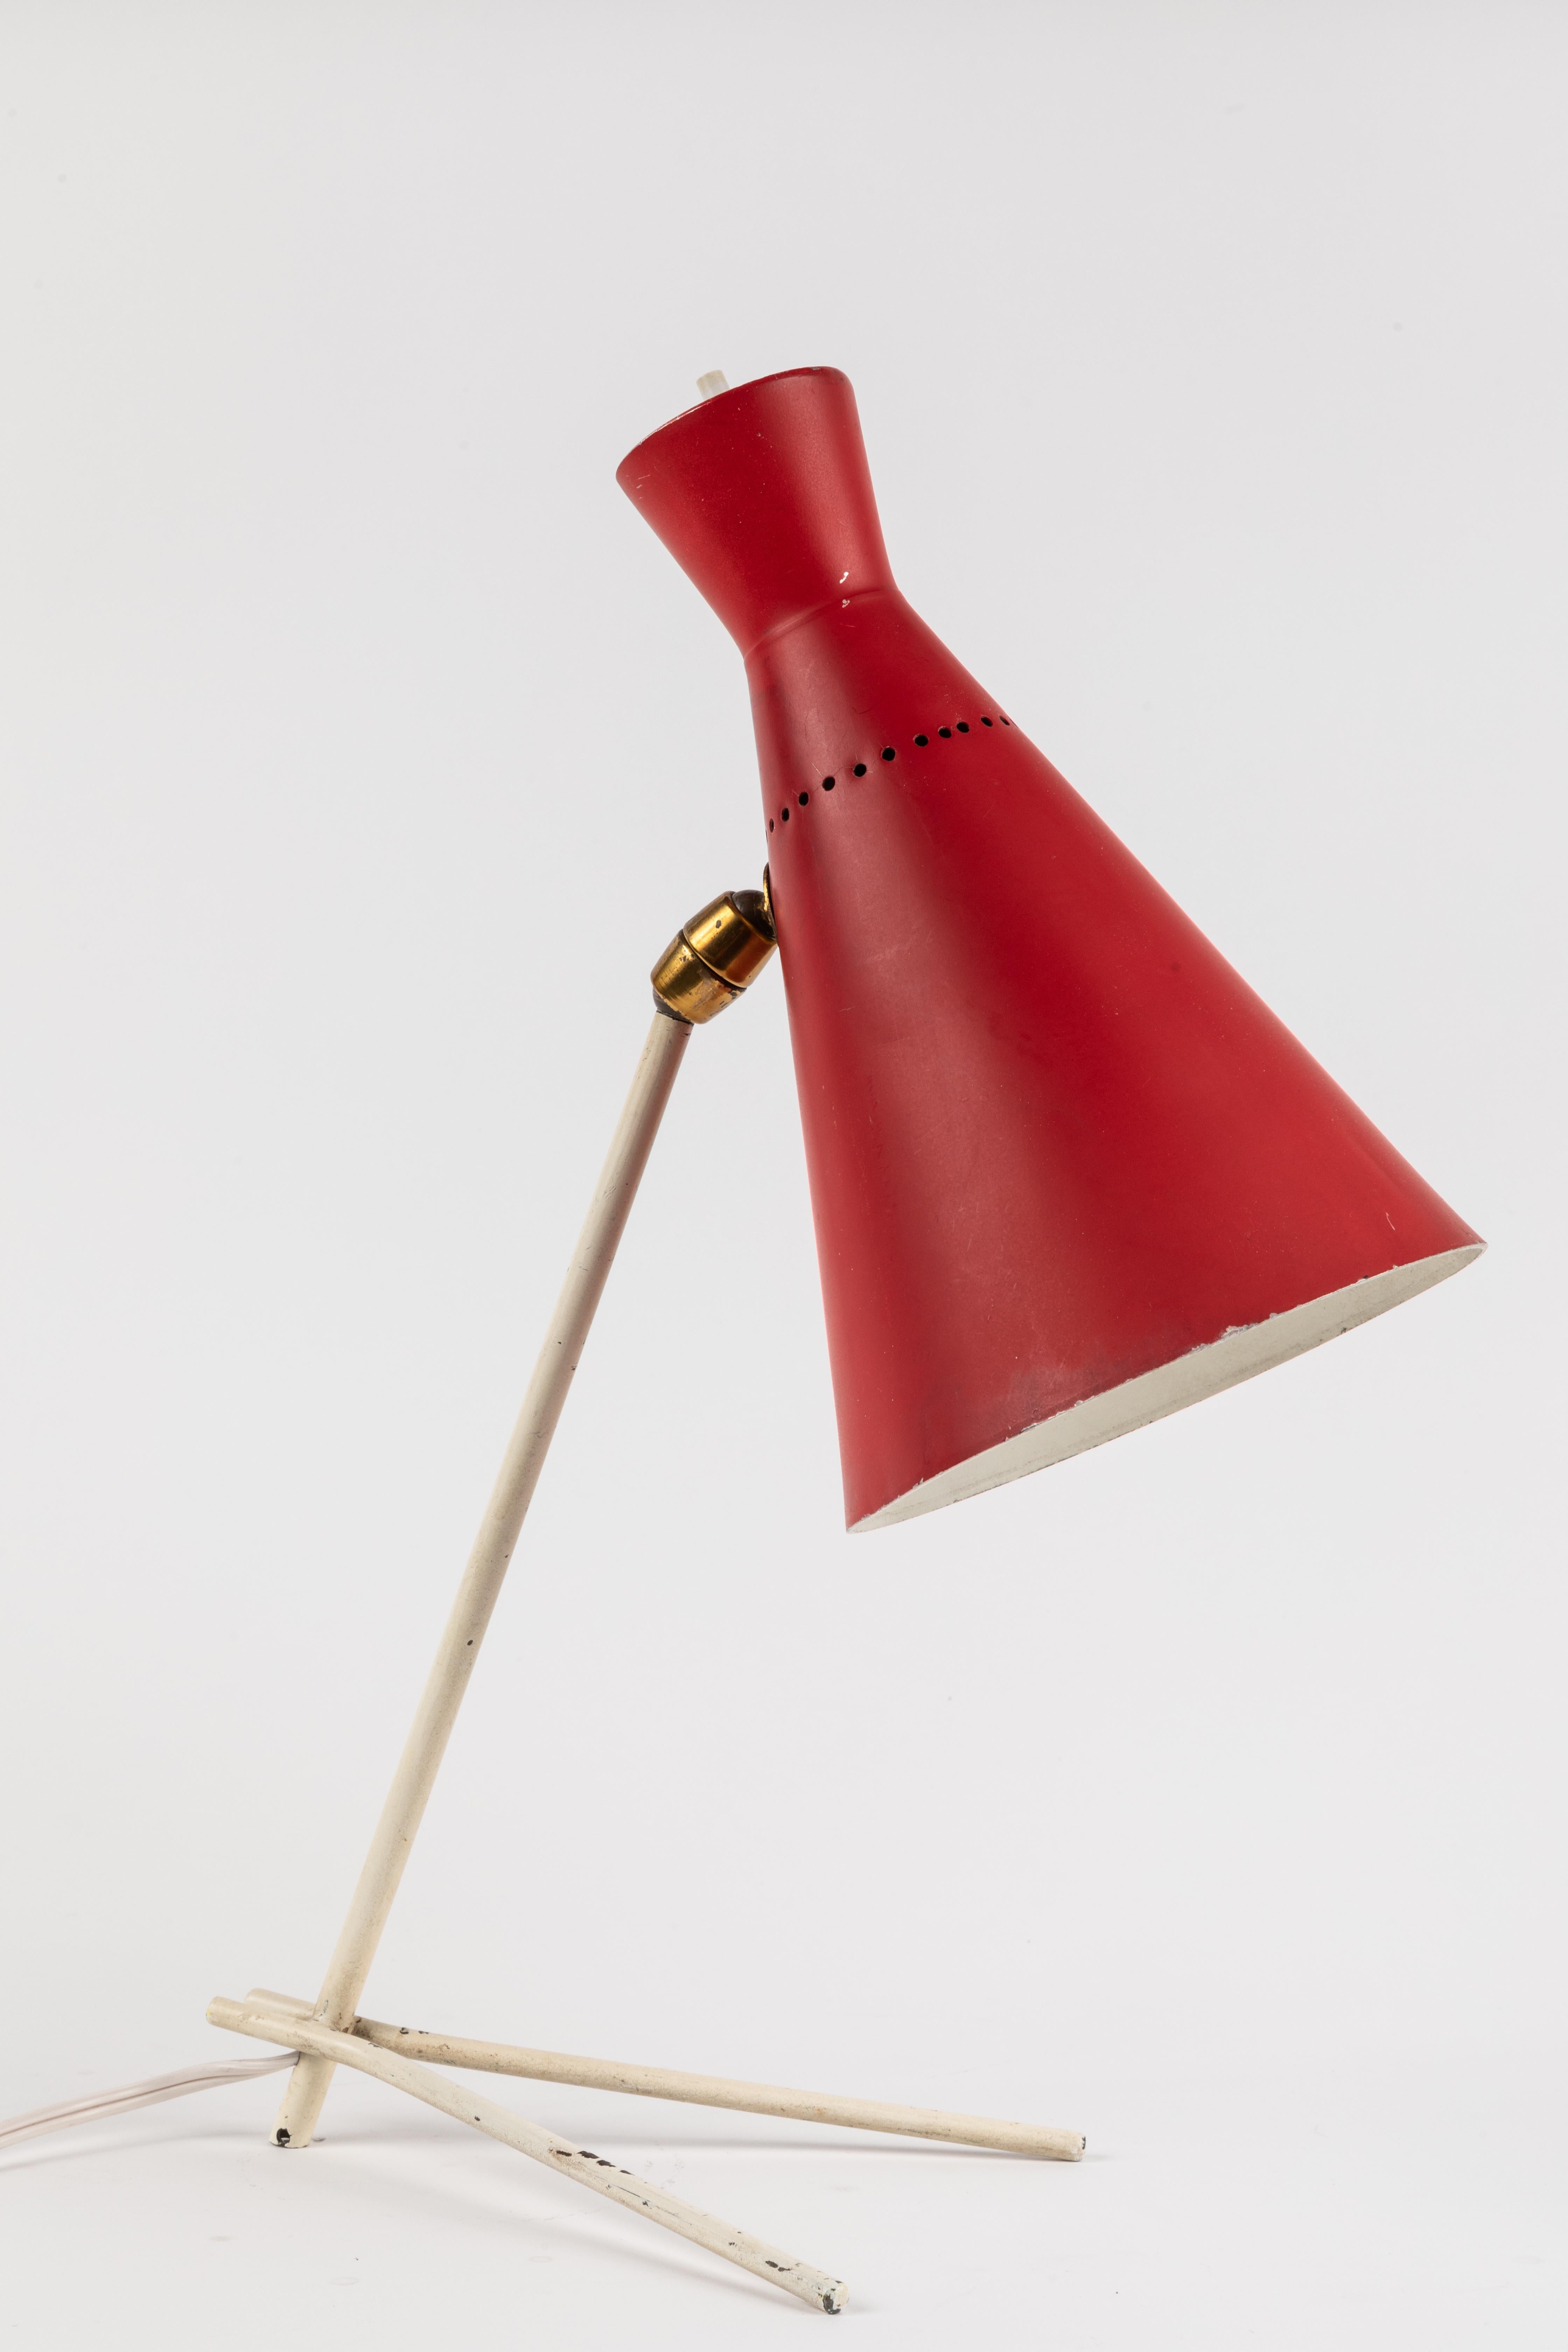 Rote und weiße Stilux Milano-Tischlampe, 1950er Jahre (Gemalt)